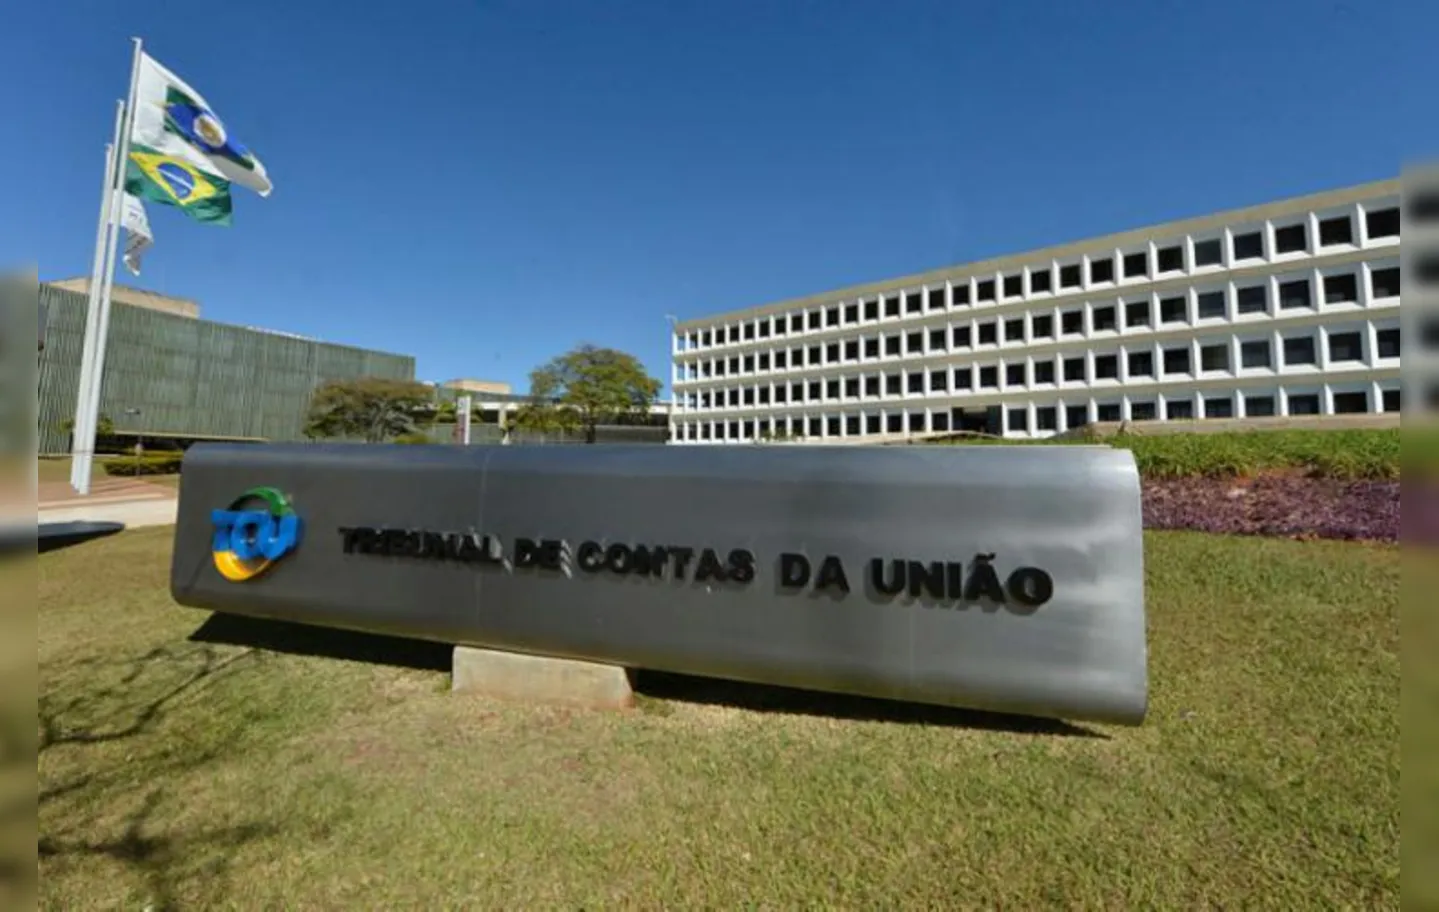 Arraes acolheu pedido do corregedor da Corte de Contas, ministro Bruno Dantas | Foto: José Paulo Lacerda | Divulgação